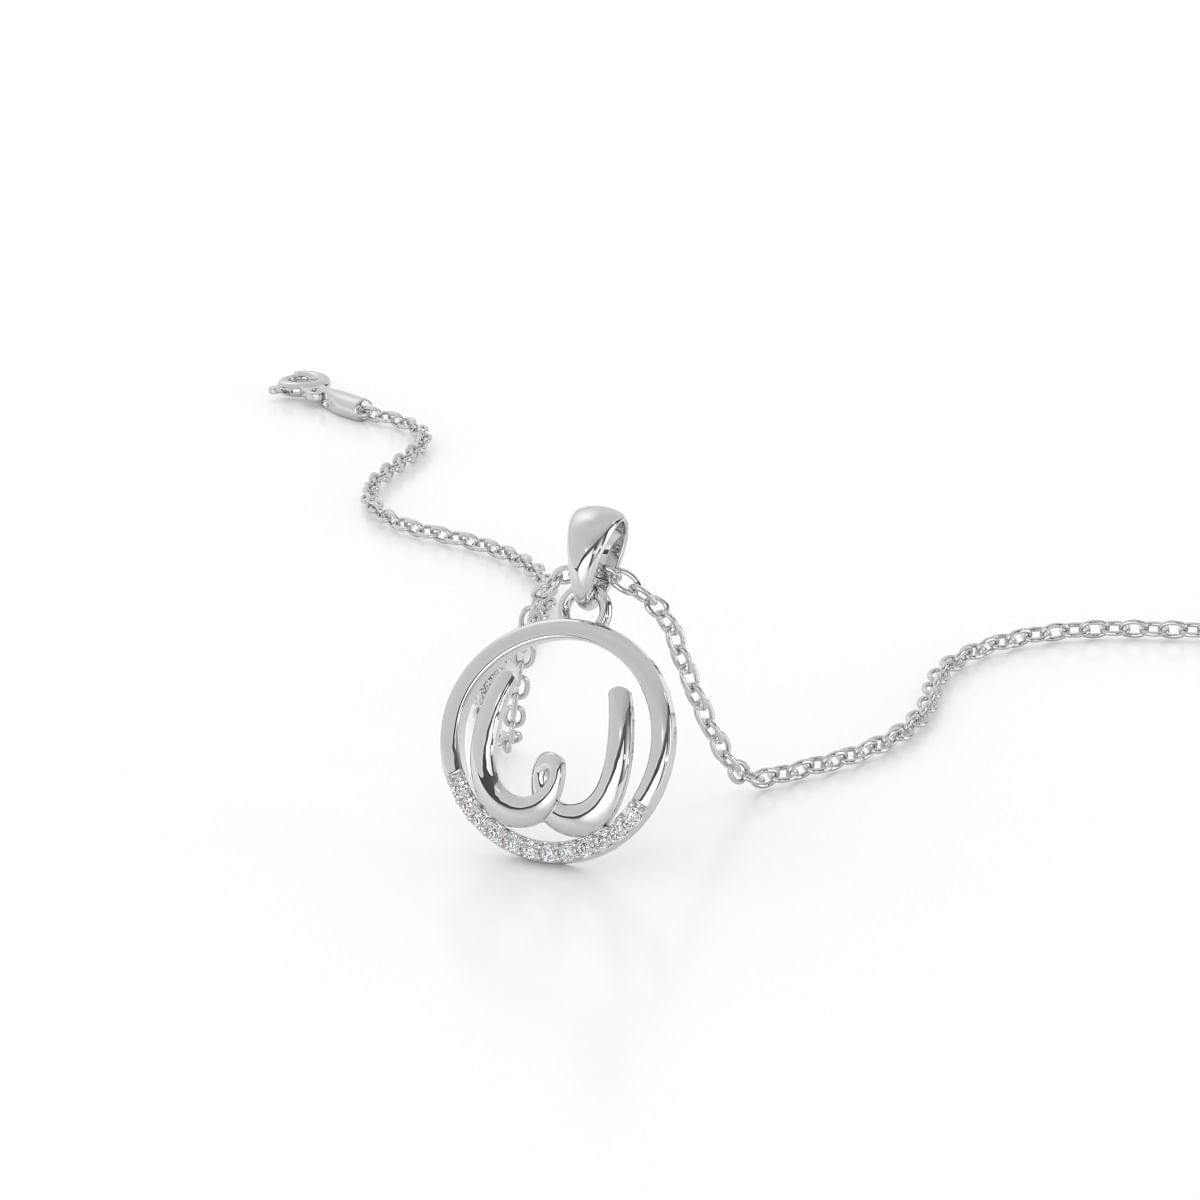 W letter diamond pendant in white gold for women